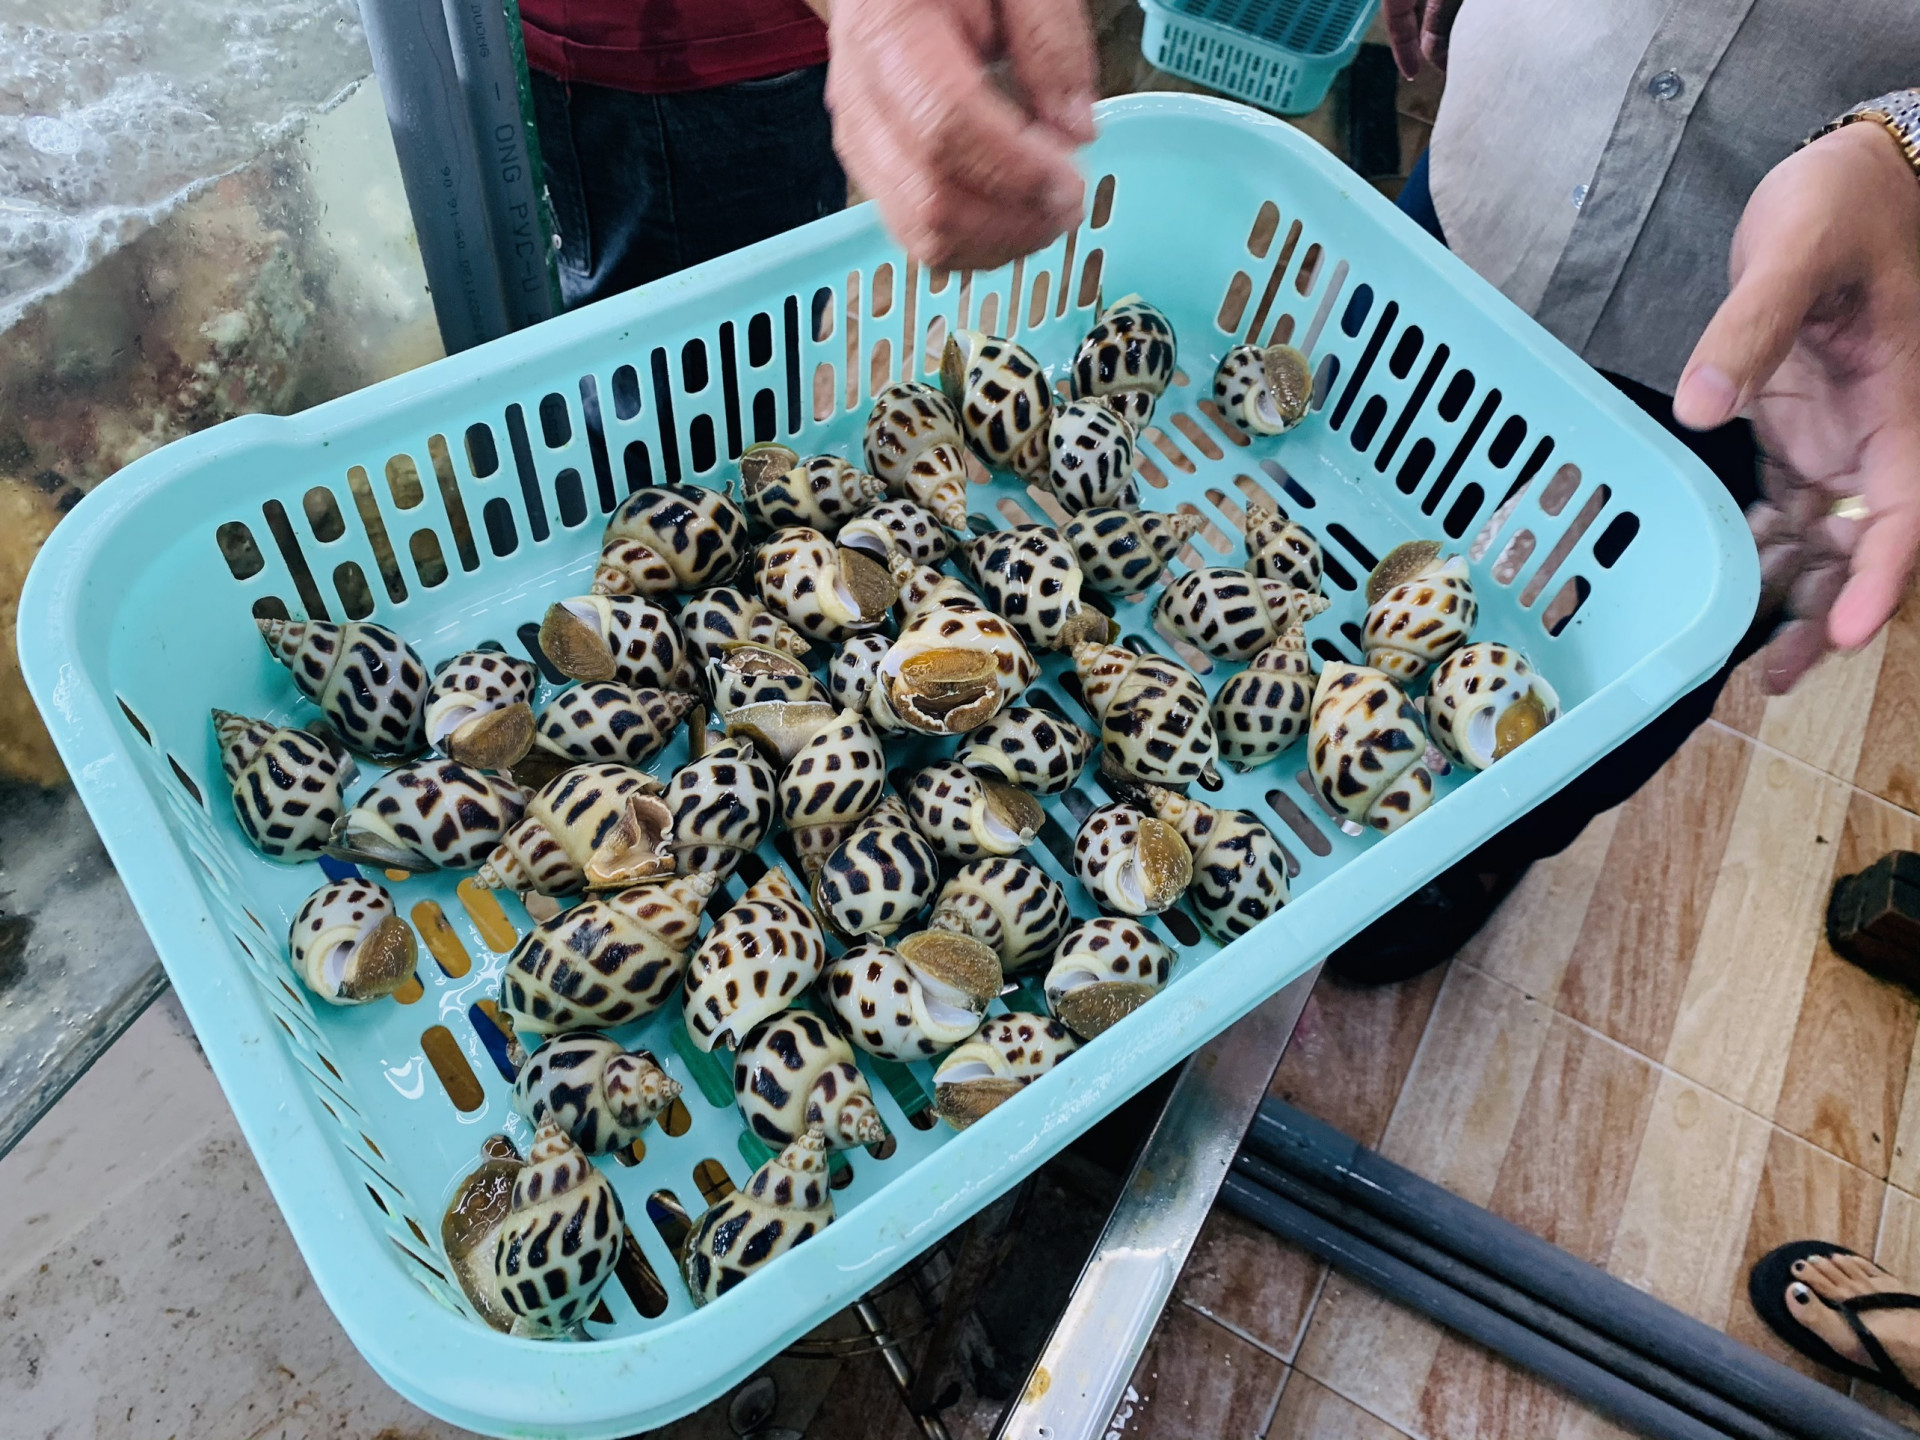  Nhà hàng Hải sản Tháp bà 86 bán các hải sản tươi sống có kích cỡ rất lớn. Theo nhân viên nhà hàng, 2 du khách đến từ miền Bắc đã ăn loại ốc hương kích cỡ lớn khoảng 15-16 con/kg